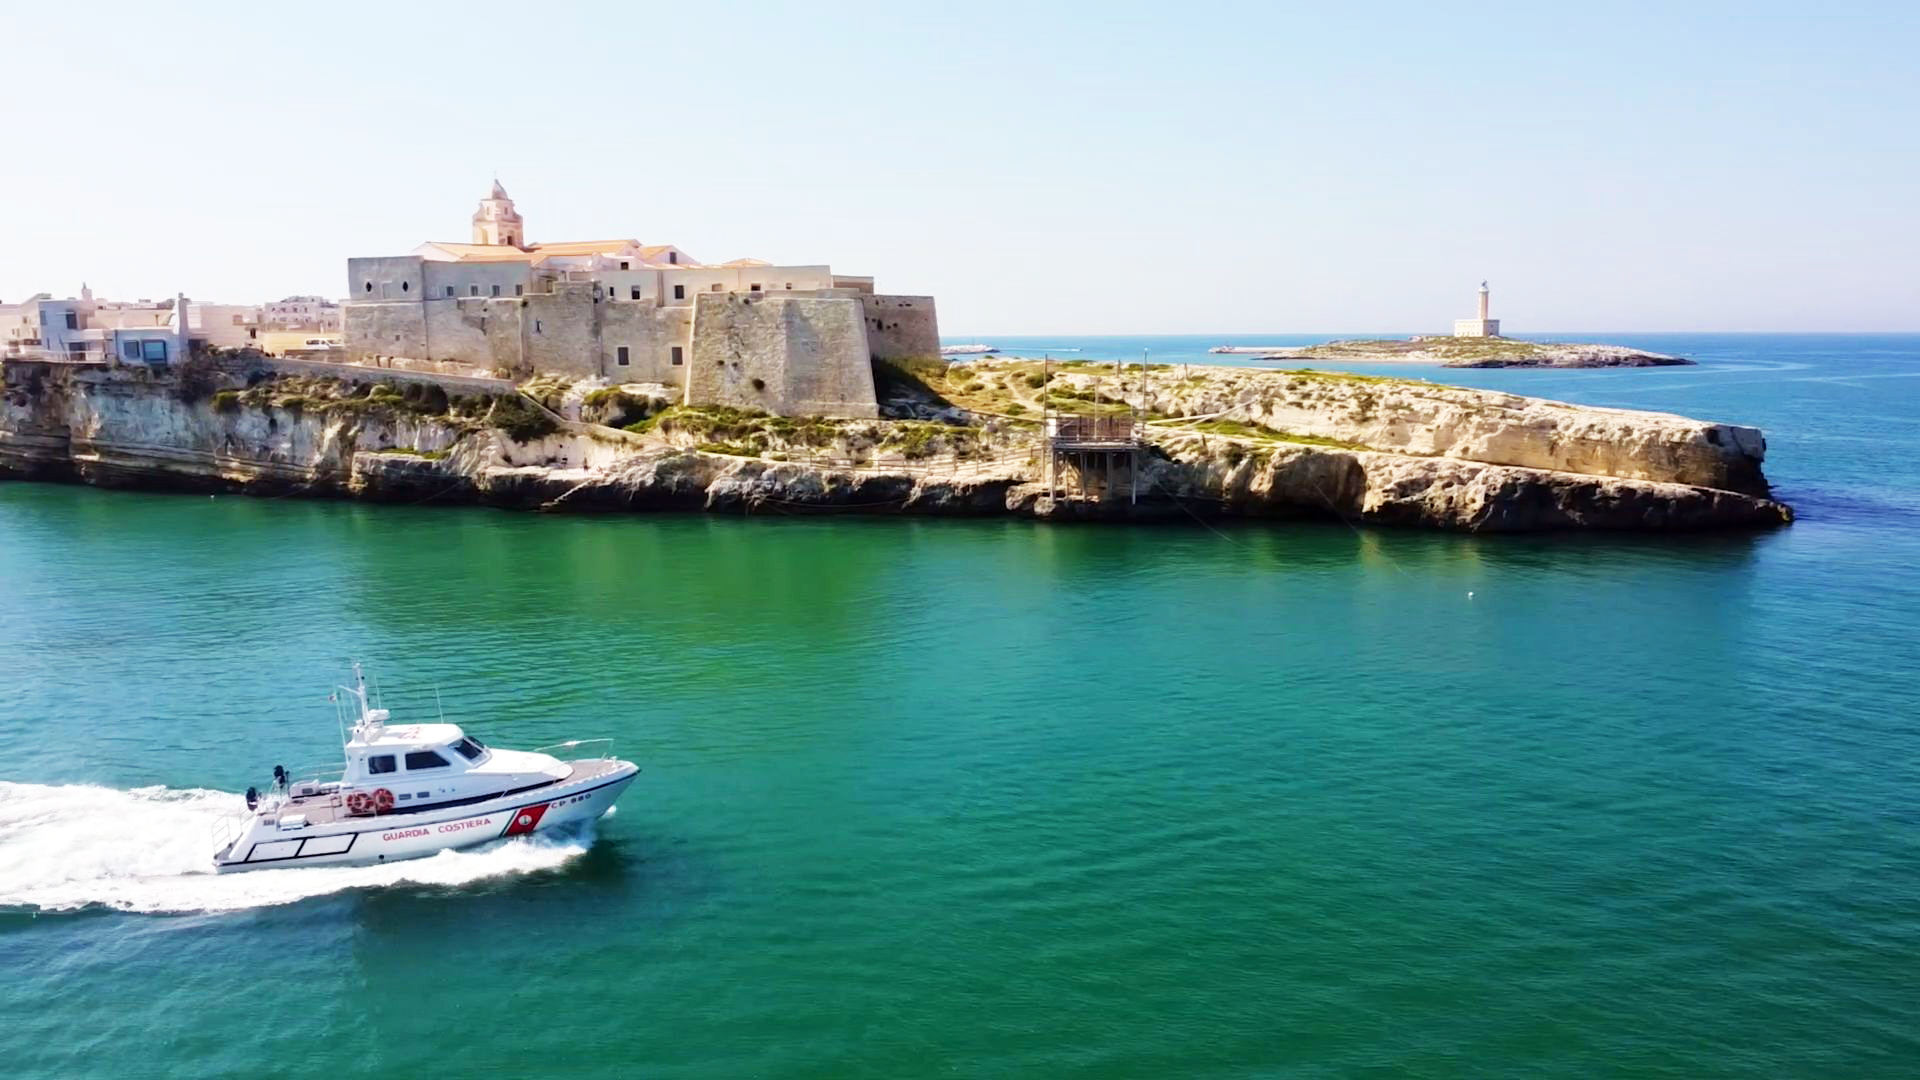 Galleria Mare della Puglia: firmato oggi l‘accordo Regione-Capitanerie di Porto - Diapositiva 8 di 8